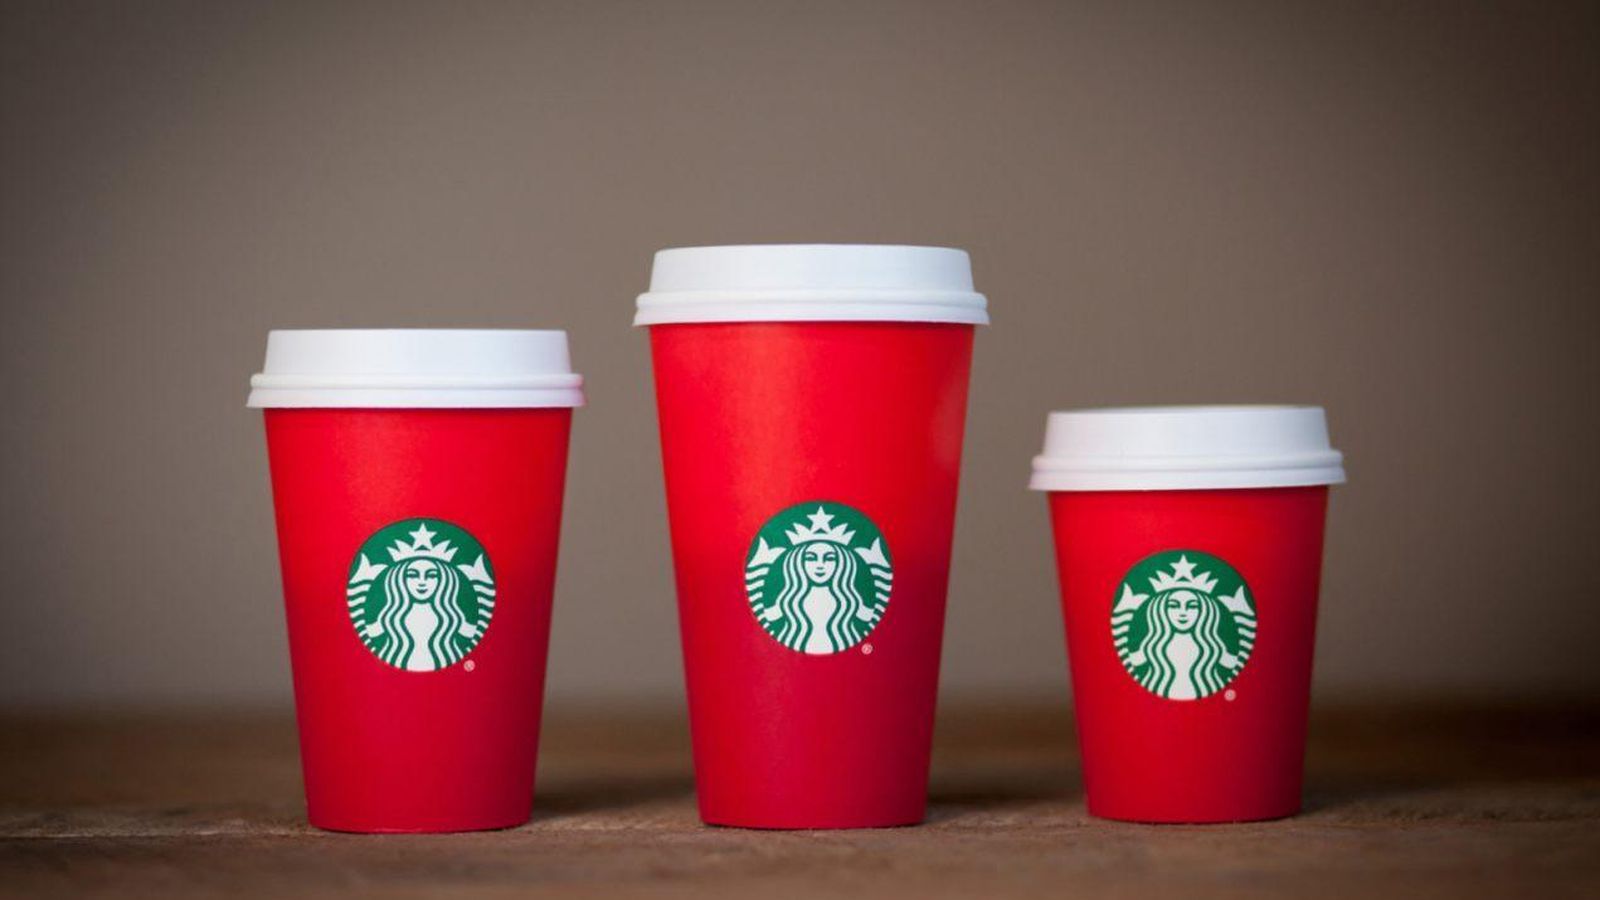 Foto: Este es el diseño de las tazas de Starbucks que ha creado la polémica (Starbucks)